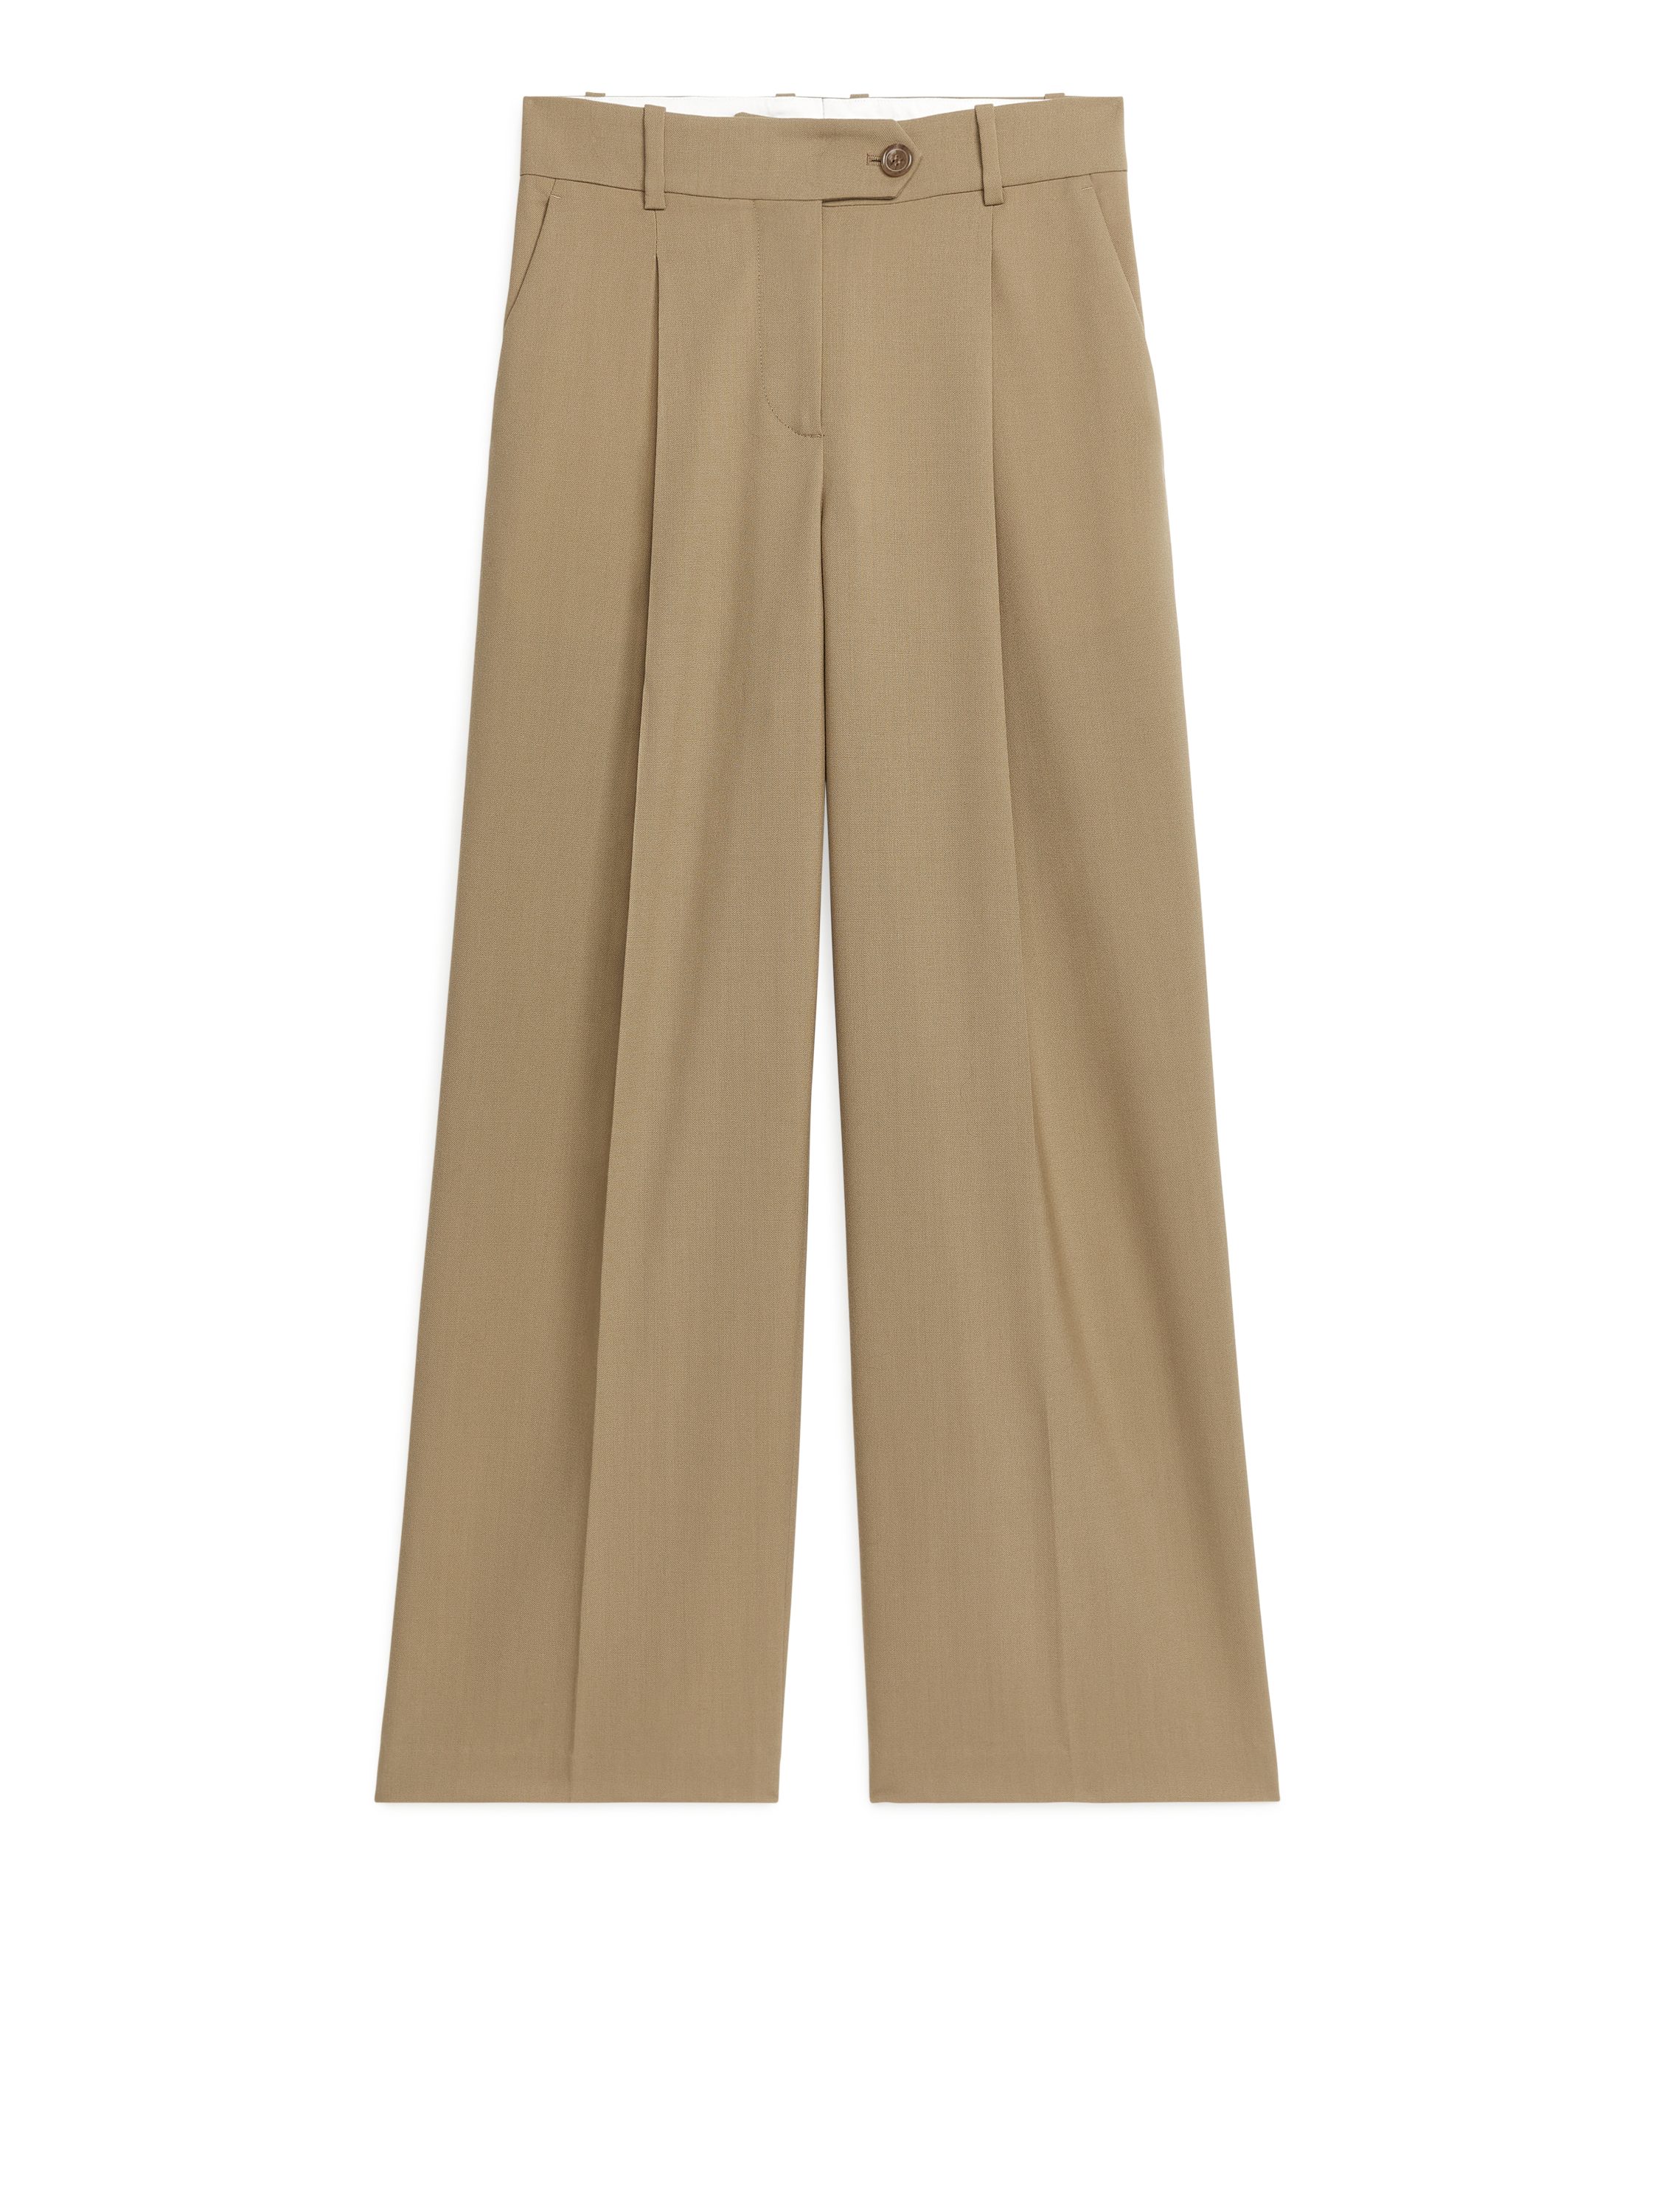 ARKET Slim Men's Wool Trousers size 48/size M Hopsack | eBay